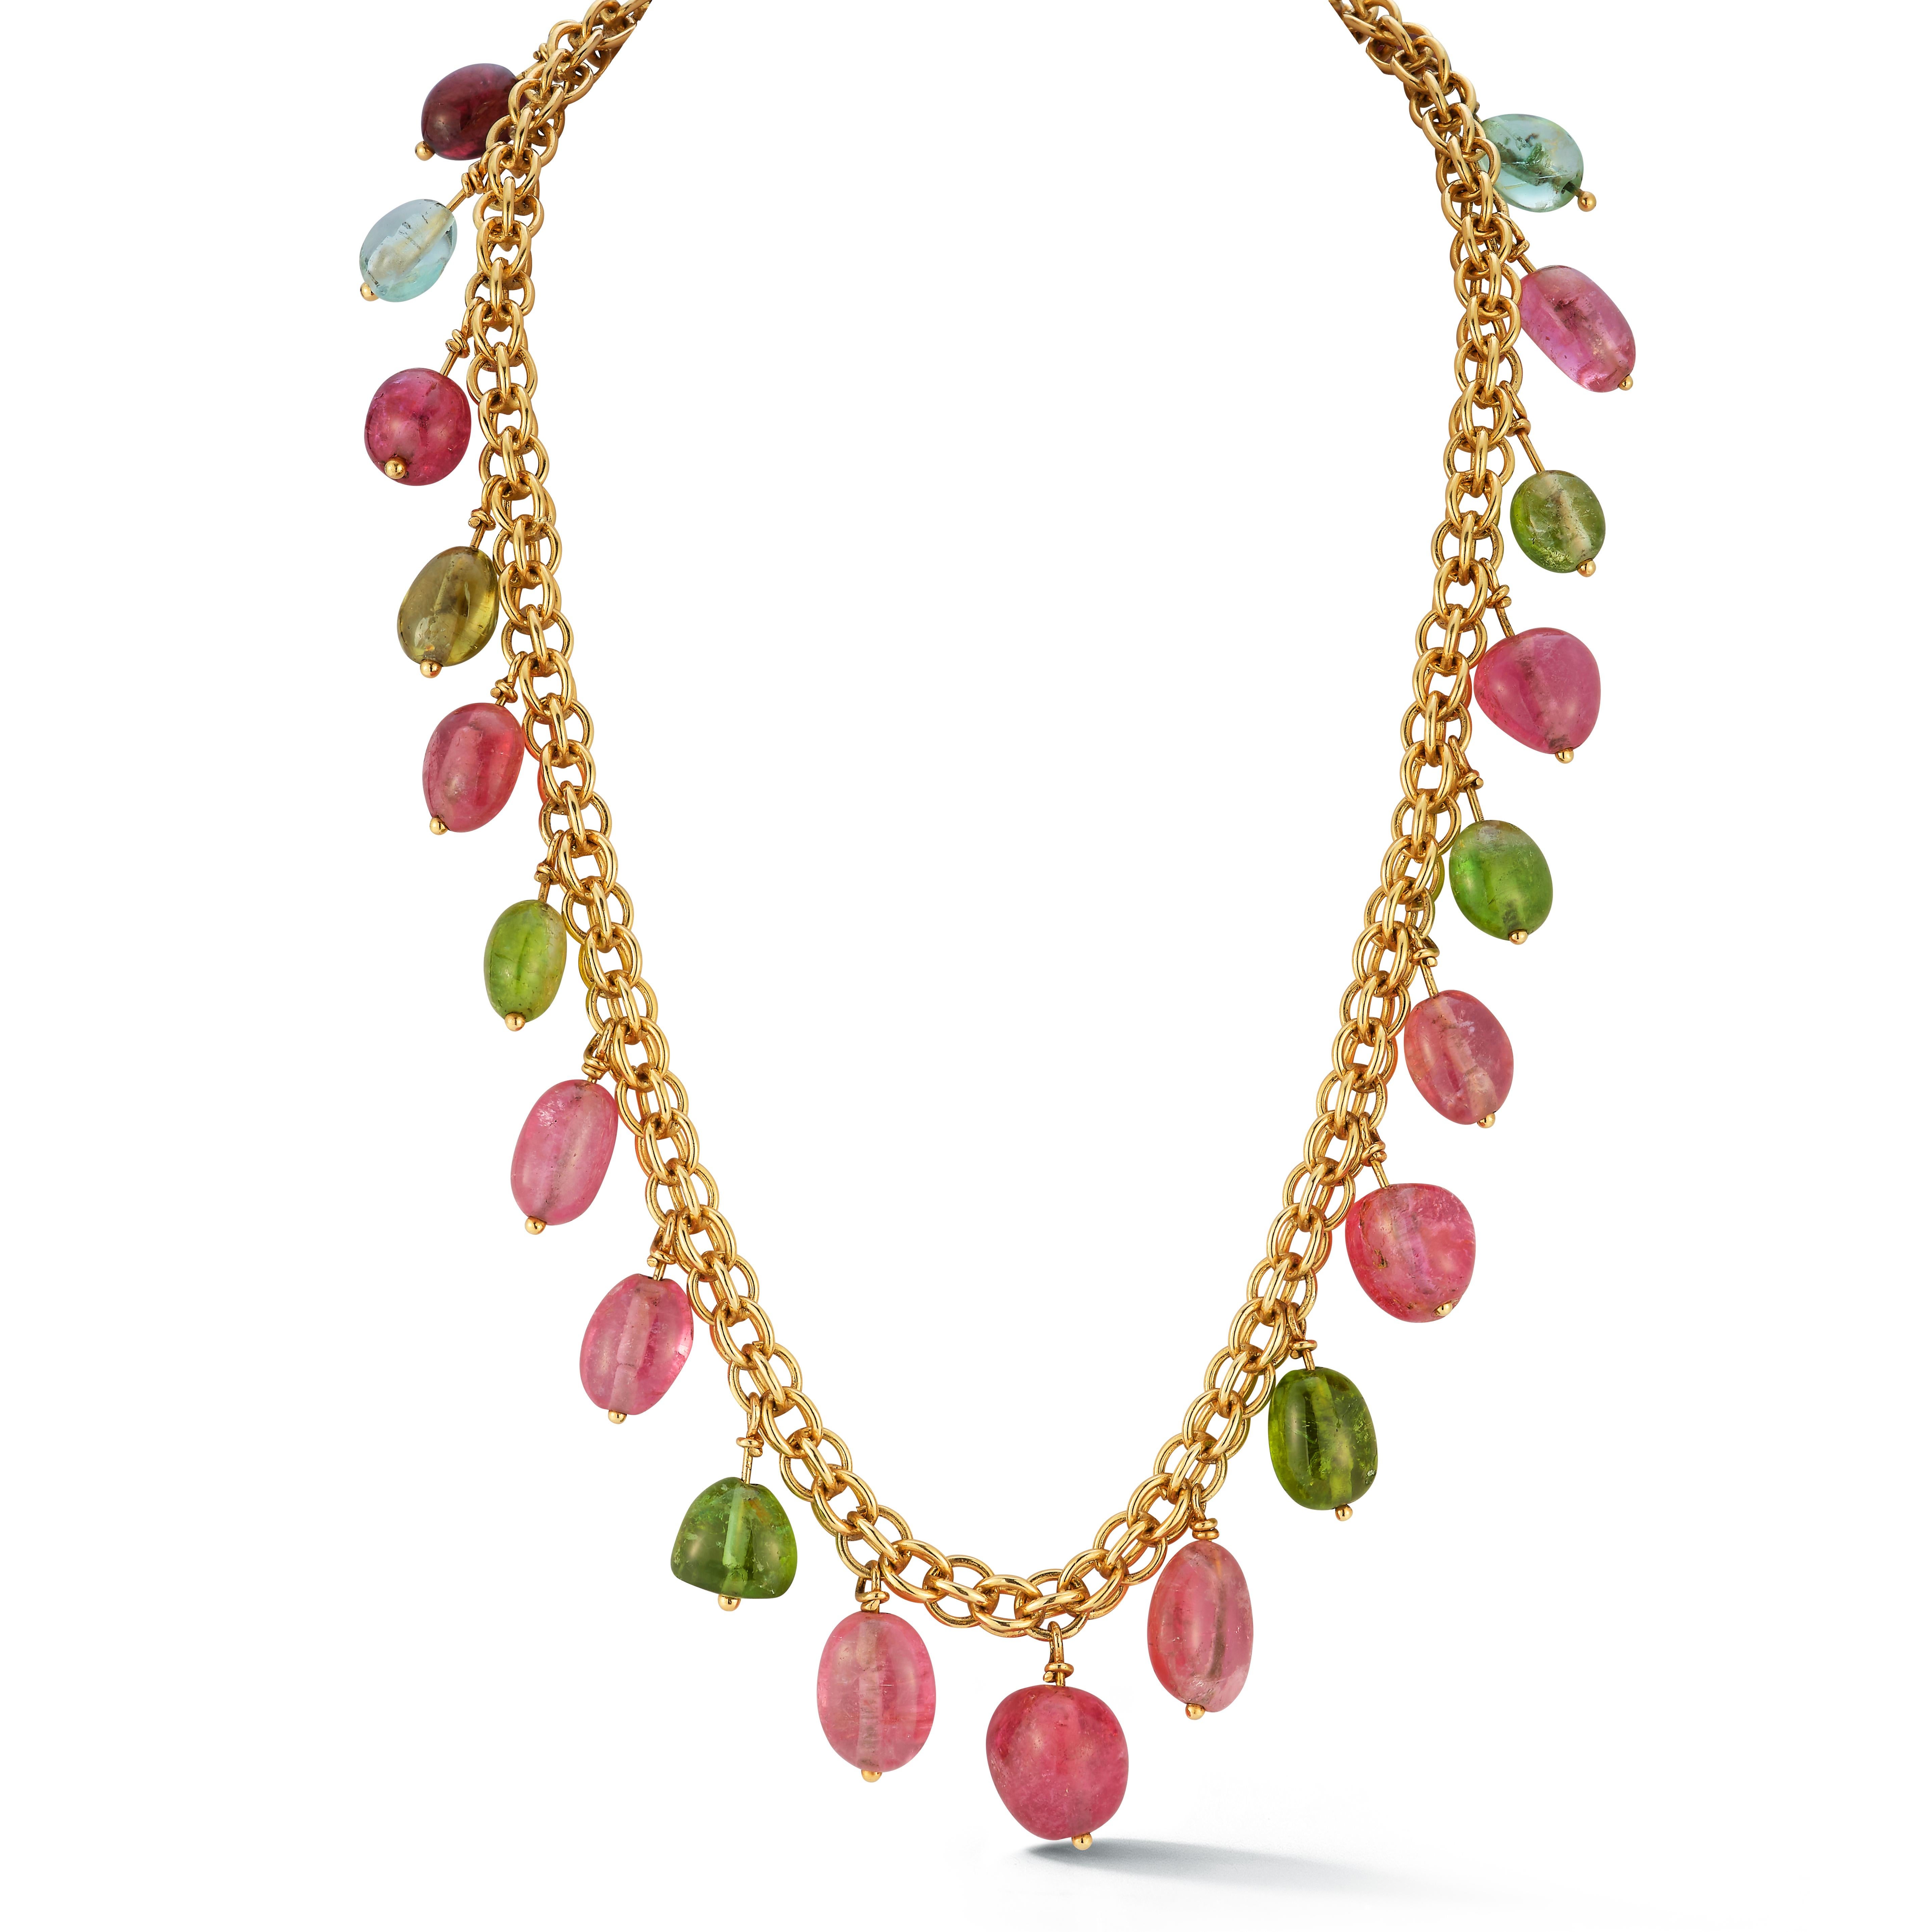 Multi Gem Gold Halskette

Kettenhalskette mit Peridot und rosa Turmalinperlen 

Abmessungen: 16,5